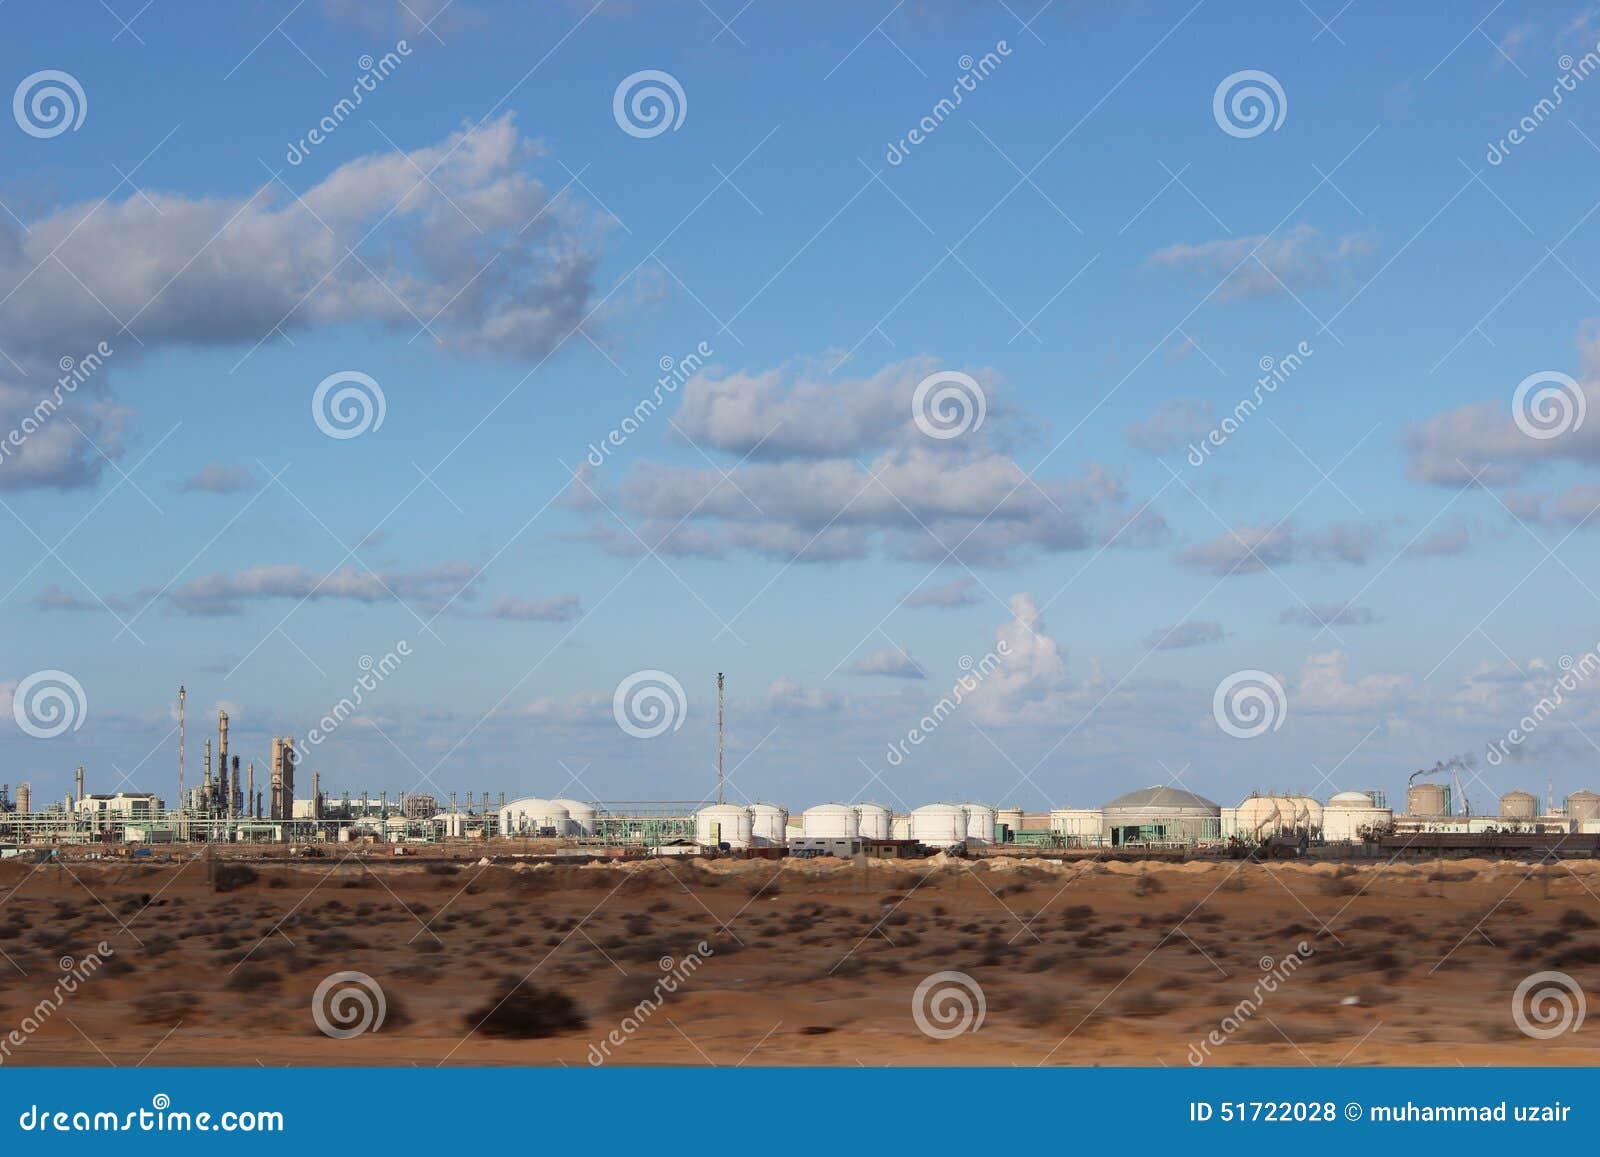 libyan-sidra oil field